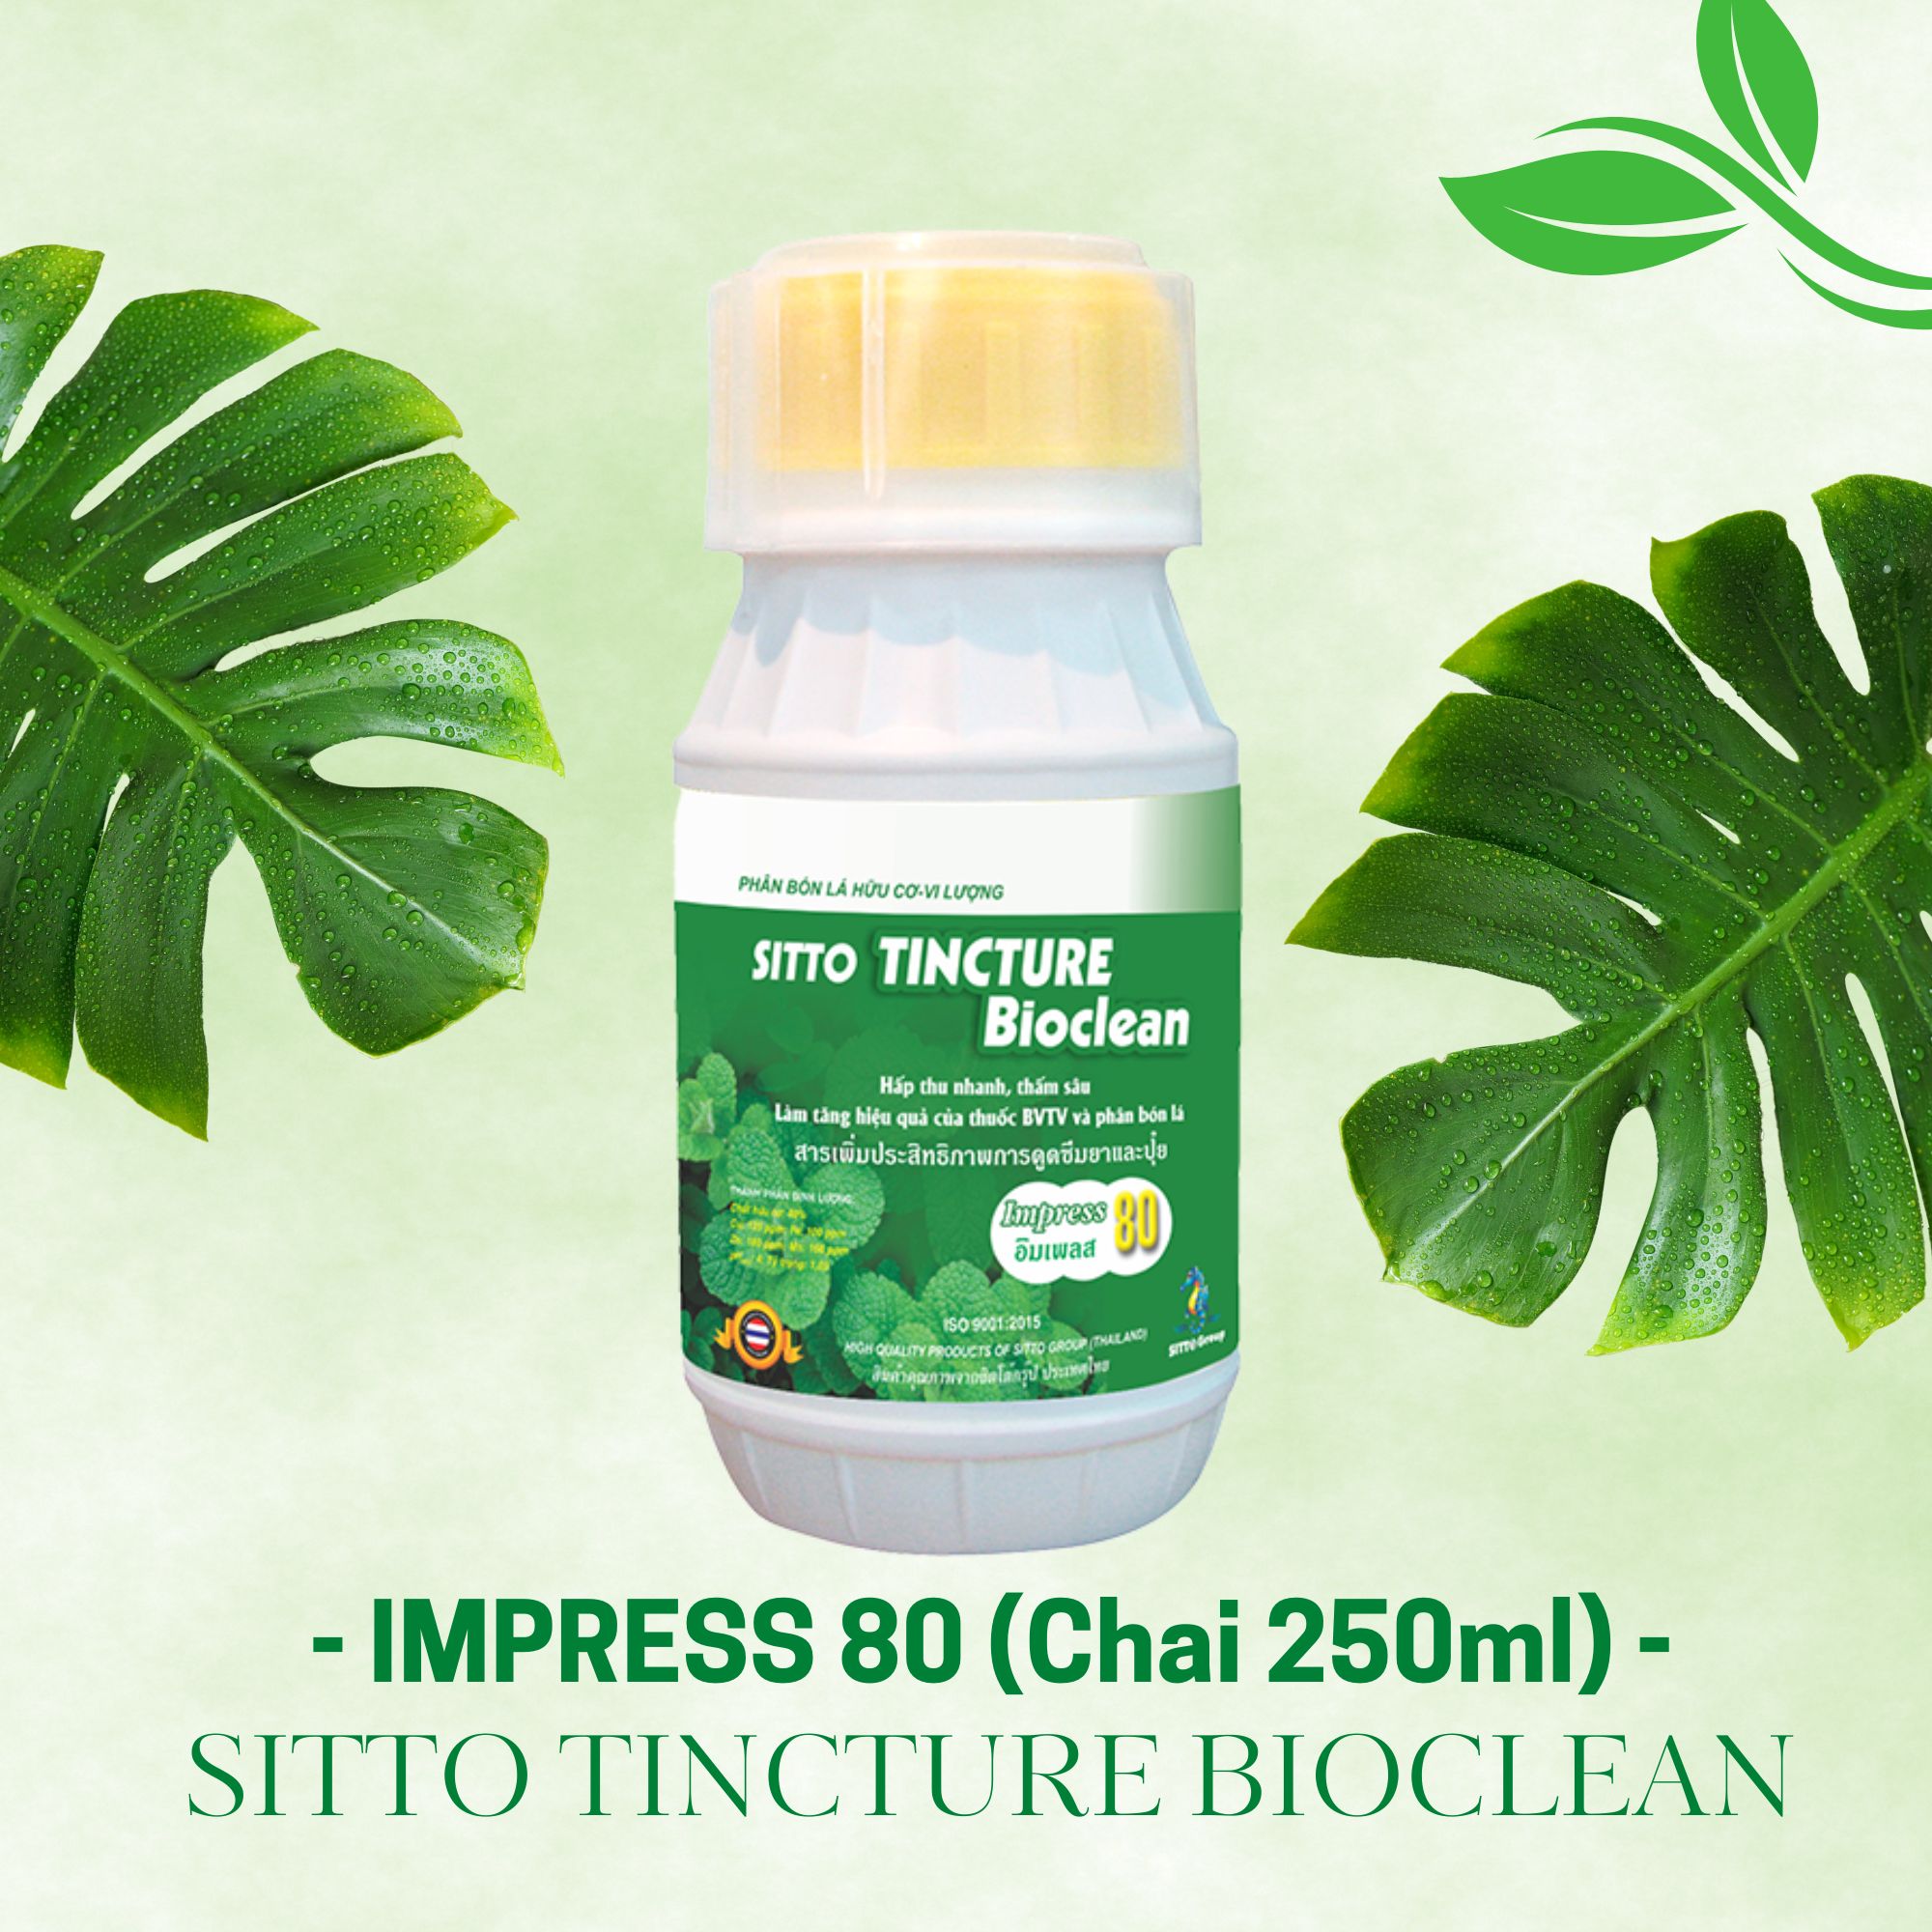 Sitto Tincture Bioclean - Impress 80 (Chai 250ml) - Hấp thu nhanh, thấm sâu